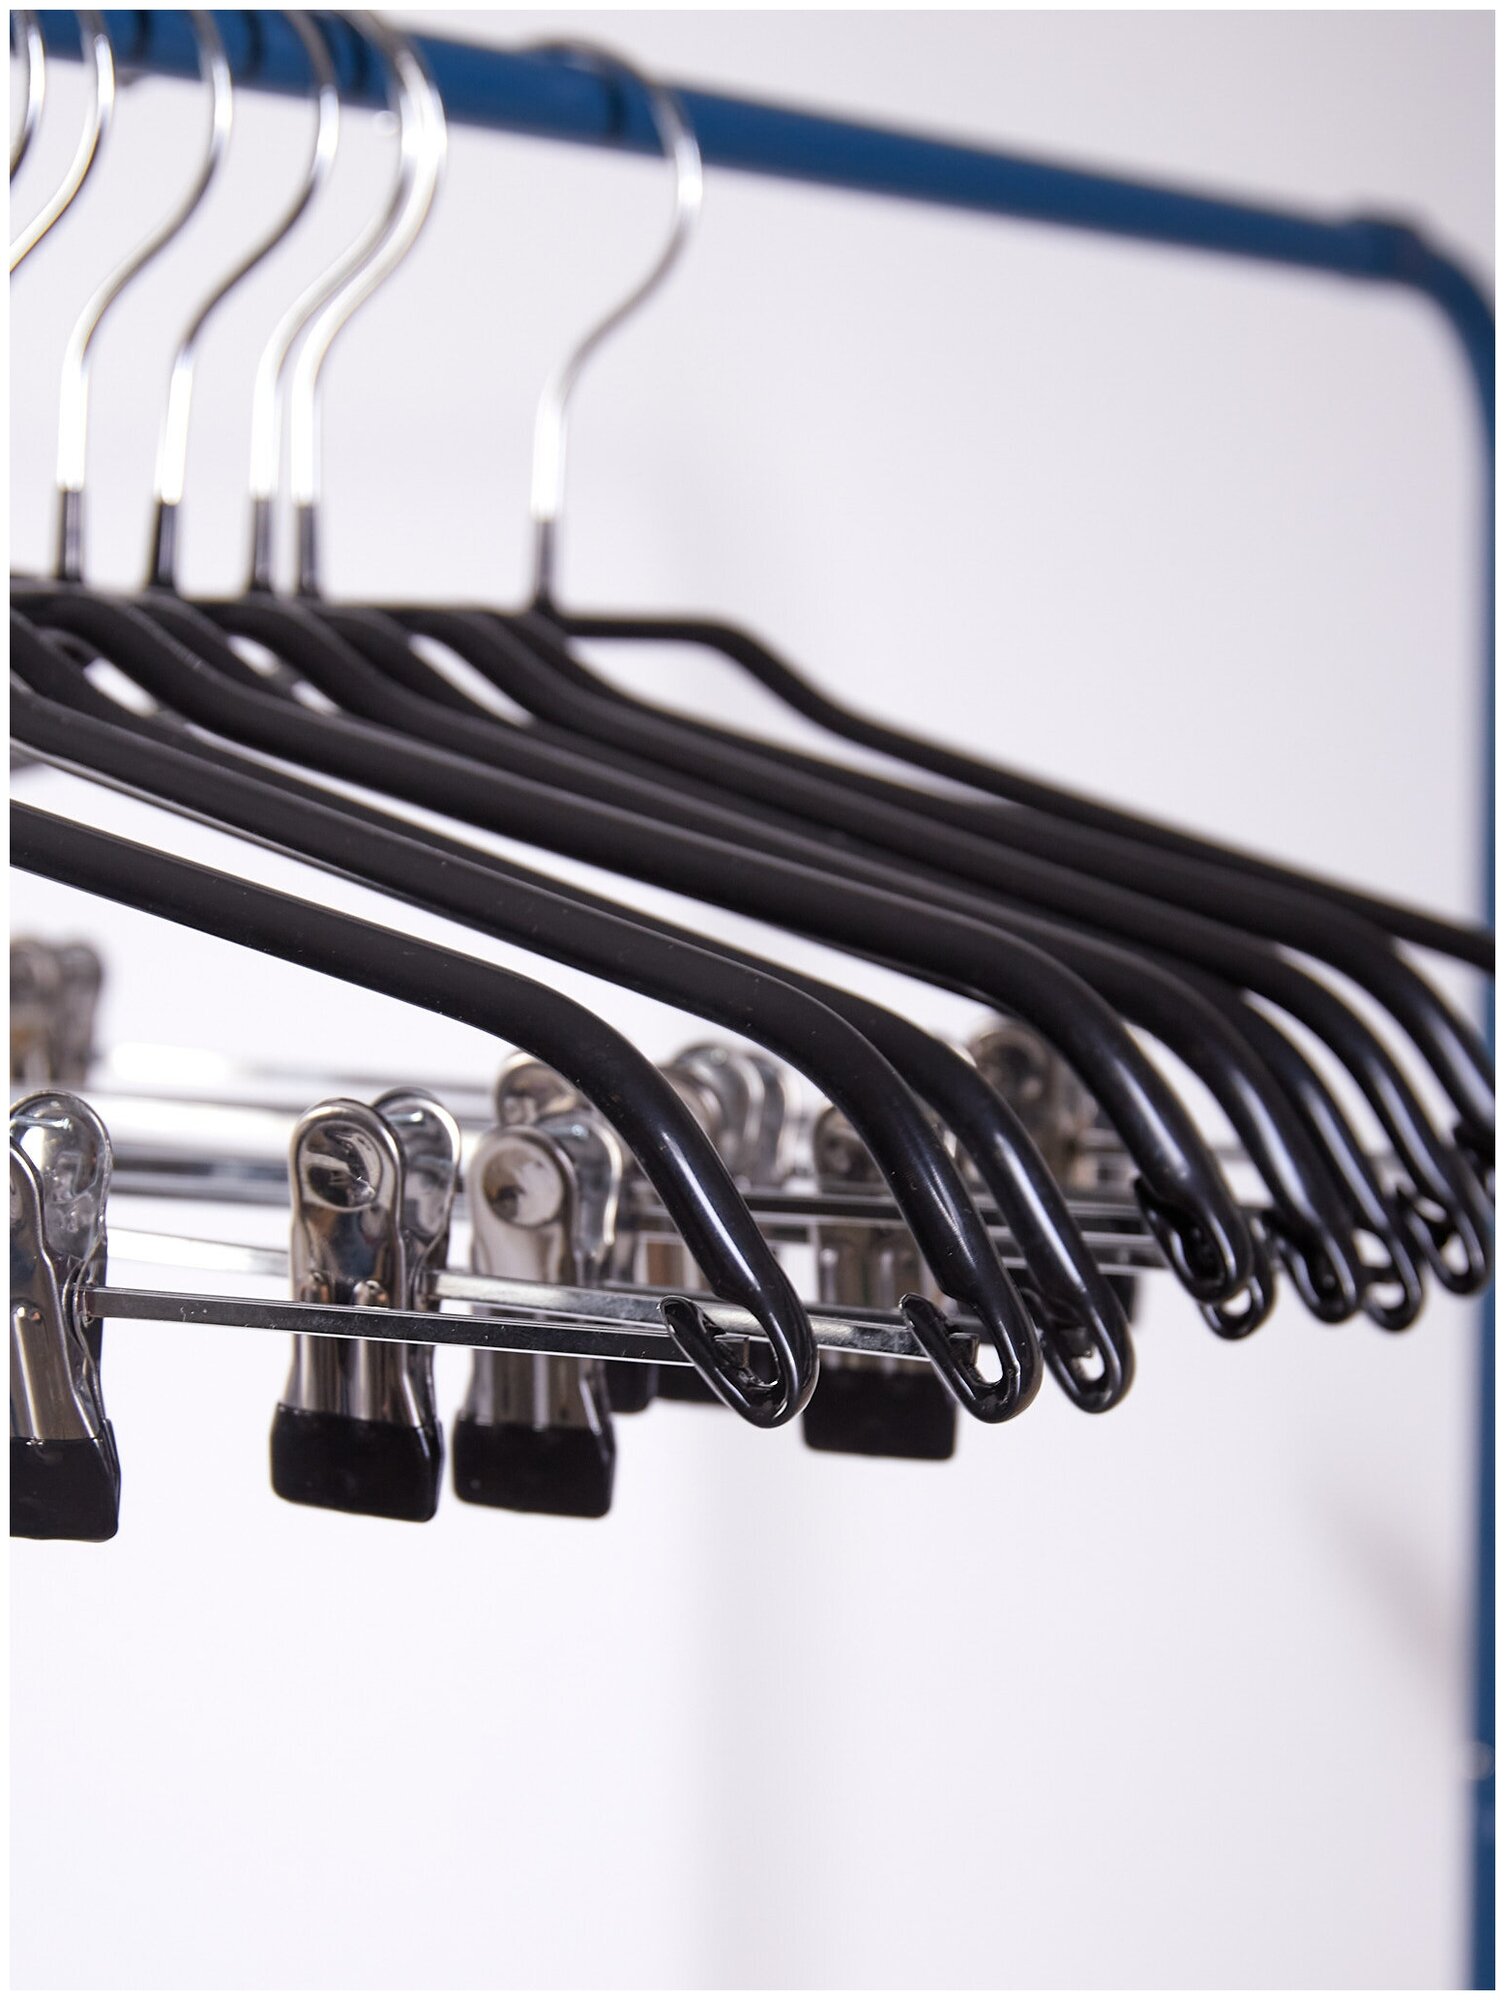 Вешалки-плечики для одежды, брюк и юбок с прищепками (зажимами) металлические, обрезиненные, L-40 см, цвет черный, комплект 5 штук